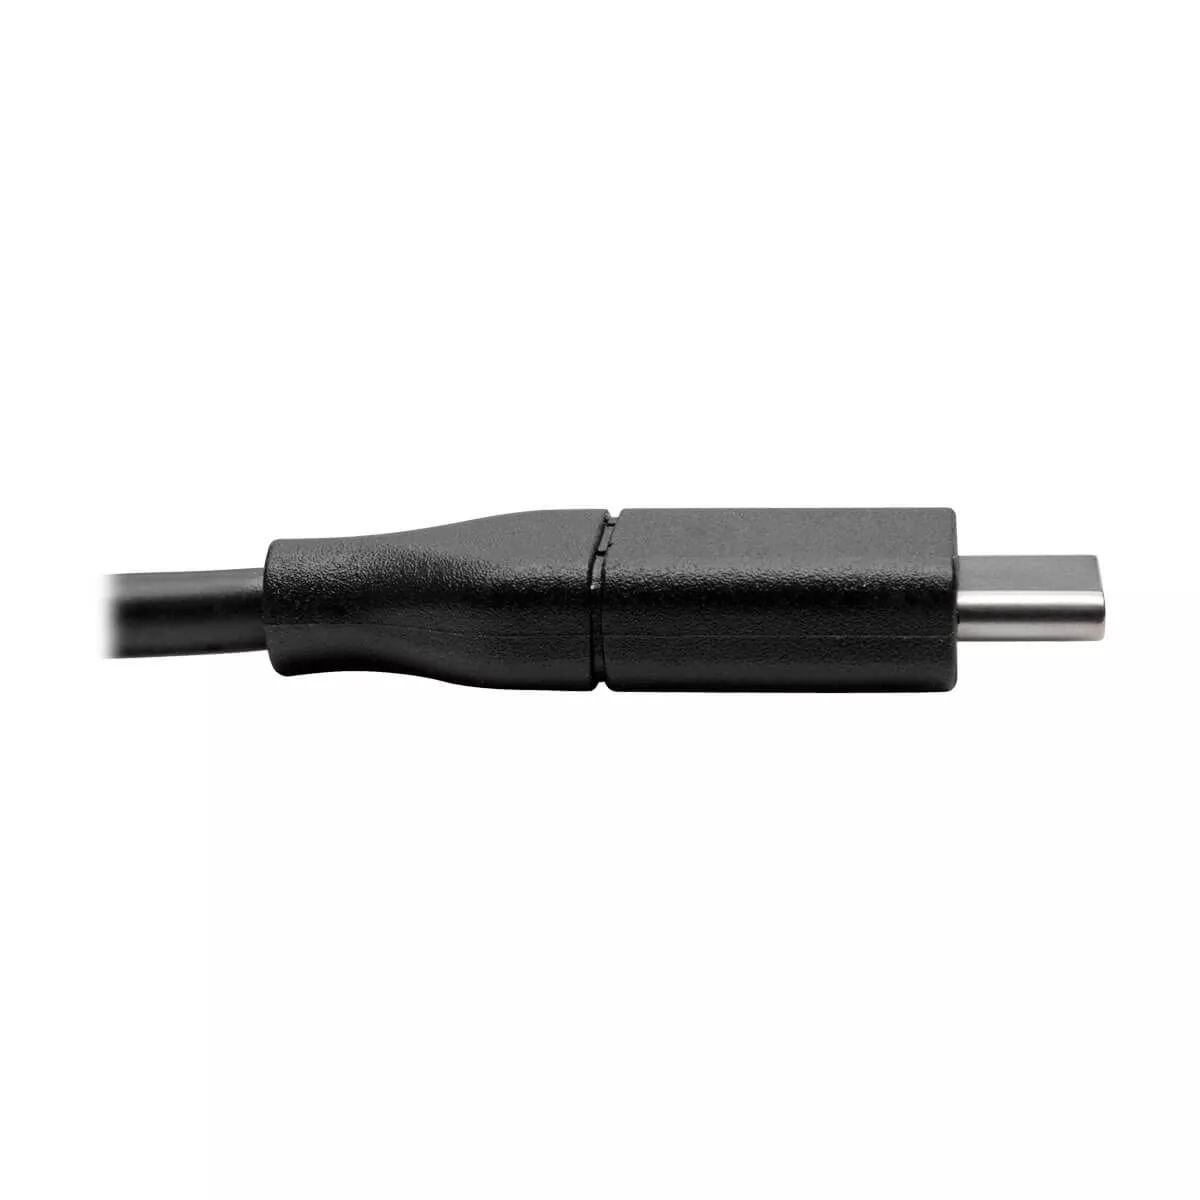 Vente EATON TRIPPLITE USB-C Cable M/M - USB 2.0 Tripp Lite au meilleur prix - visuel 4